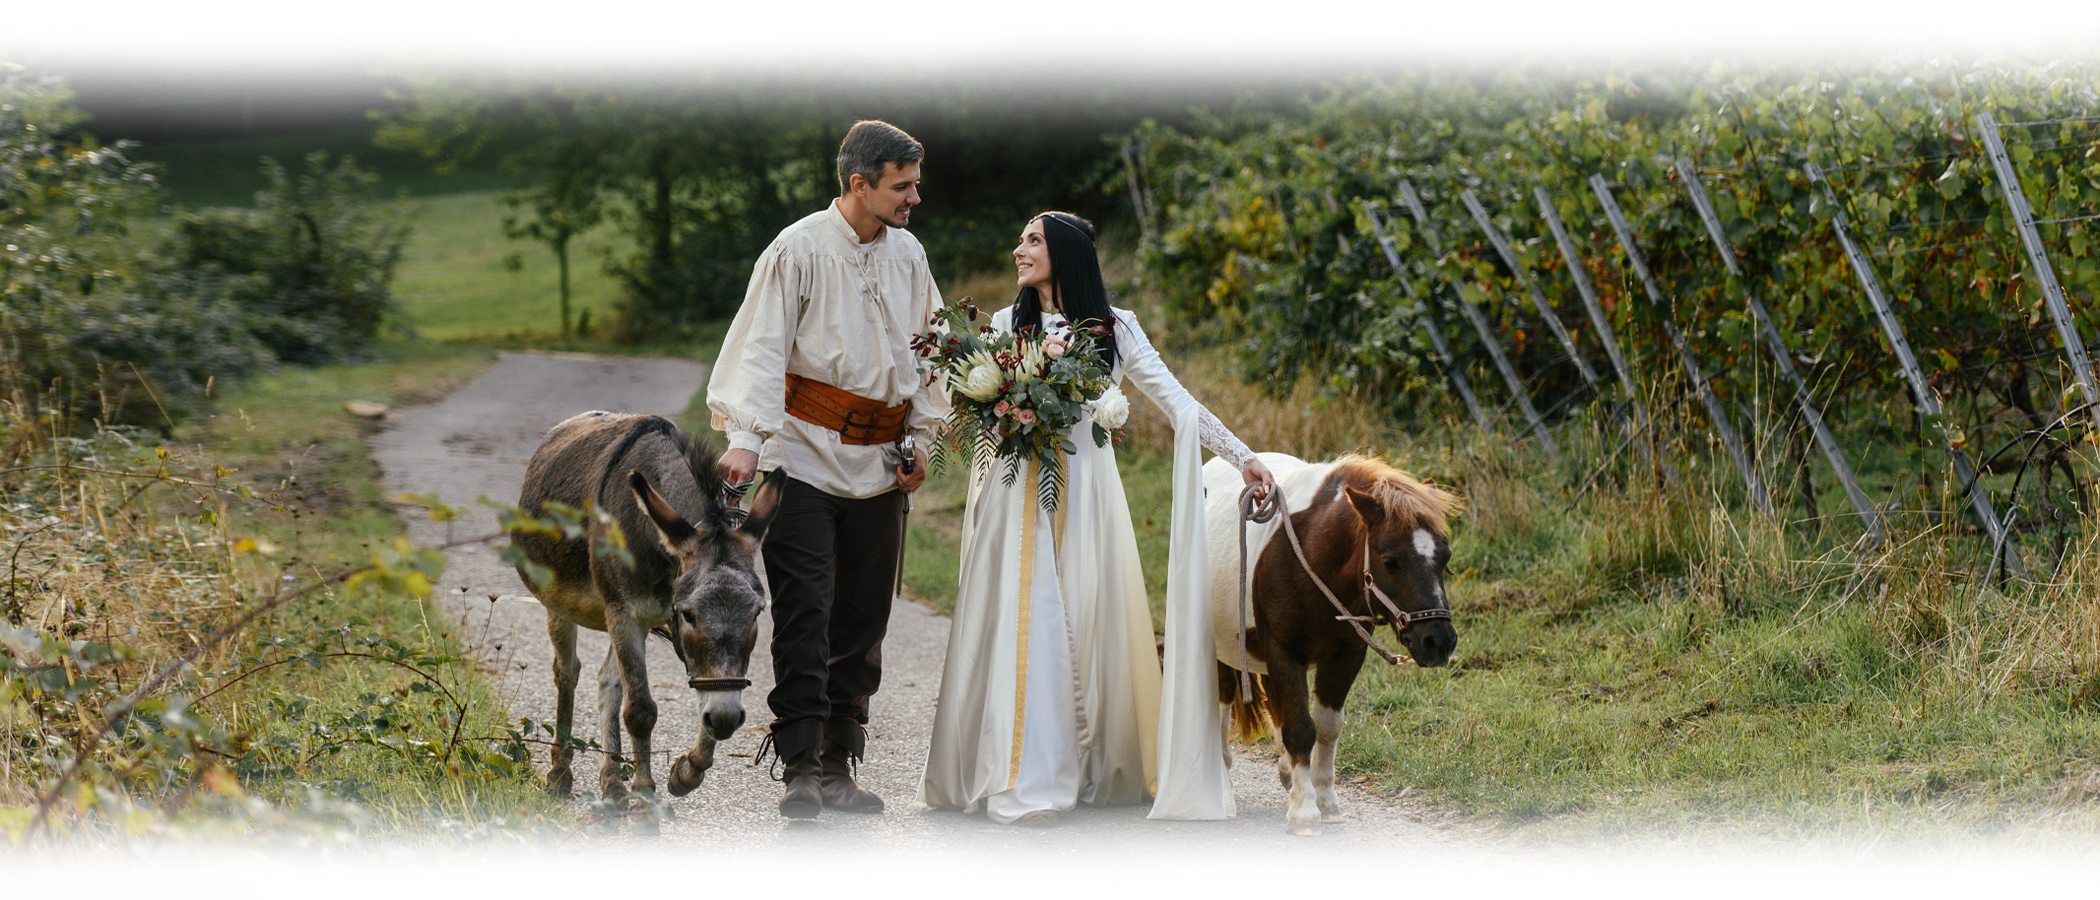 Eine Hochzeit im mittelalterlichen Stil